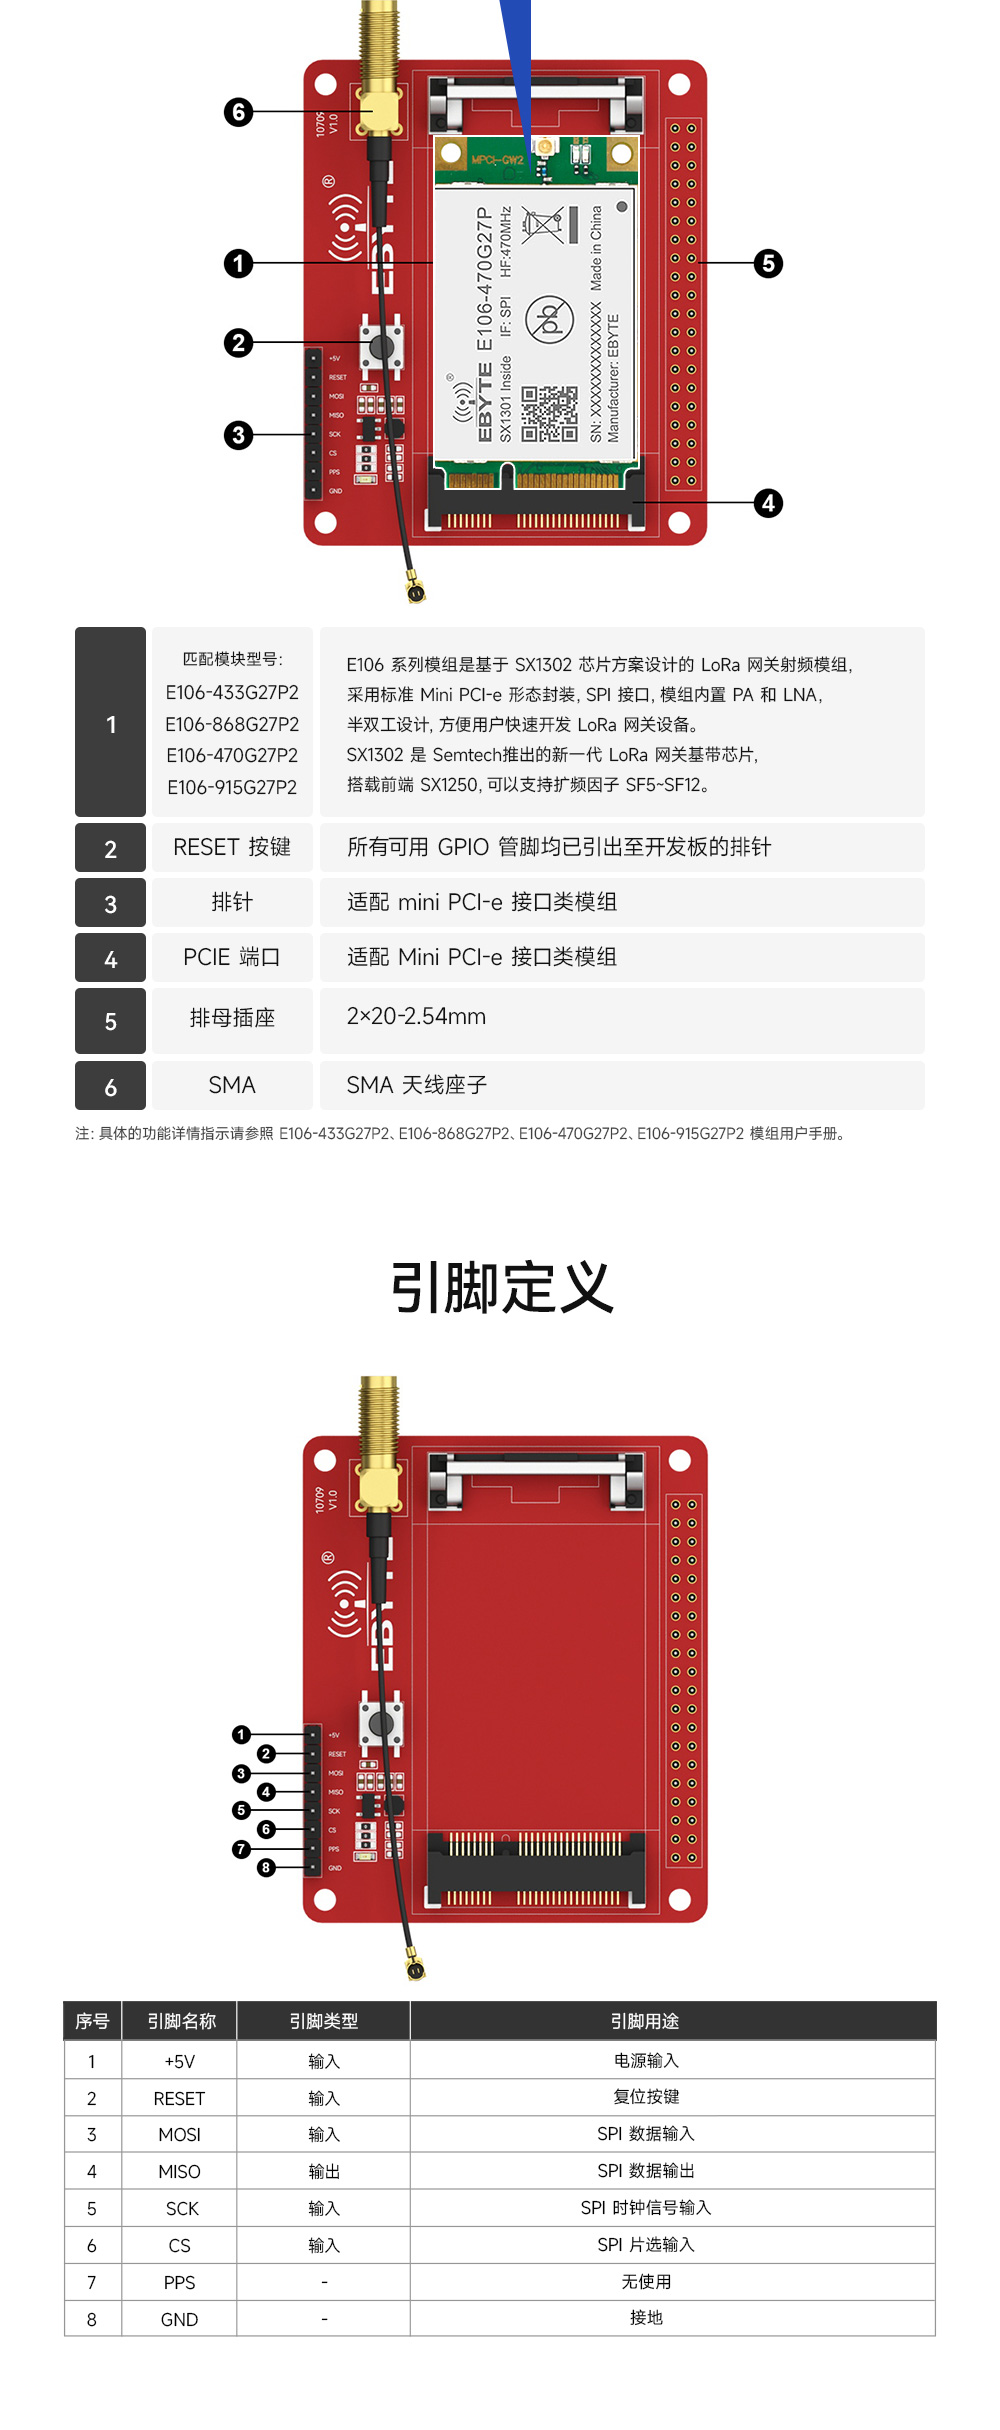 E15-LW-T1-PCIE转接测试版 (4)